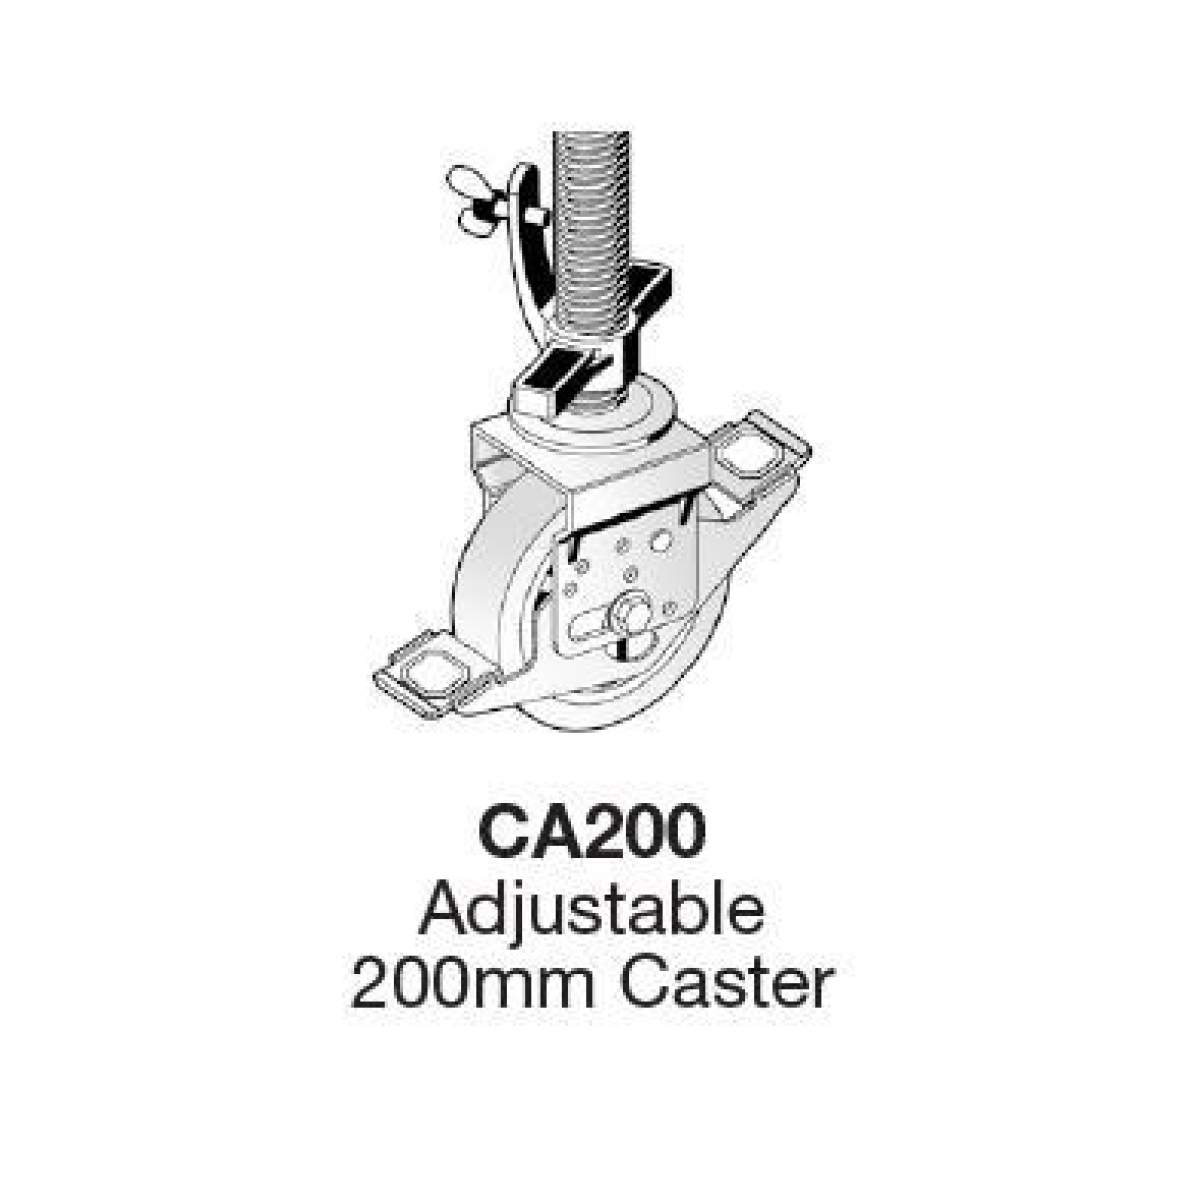 MOBI Adjustable Castor 200mm